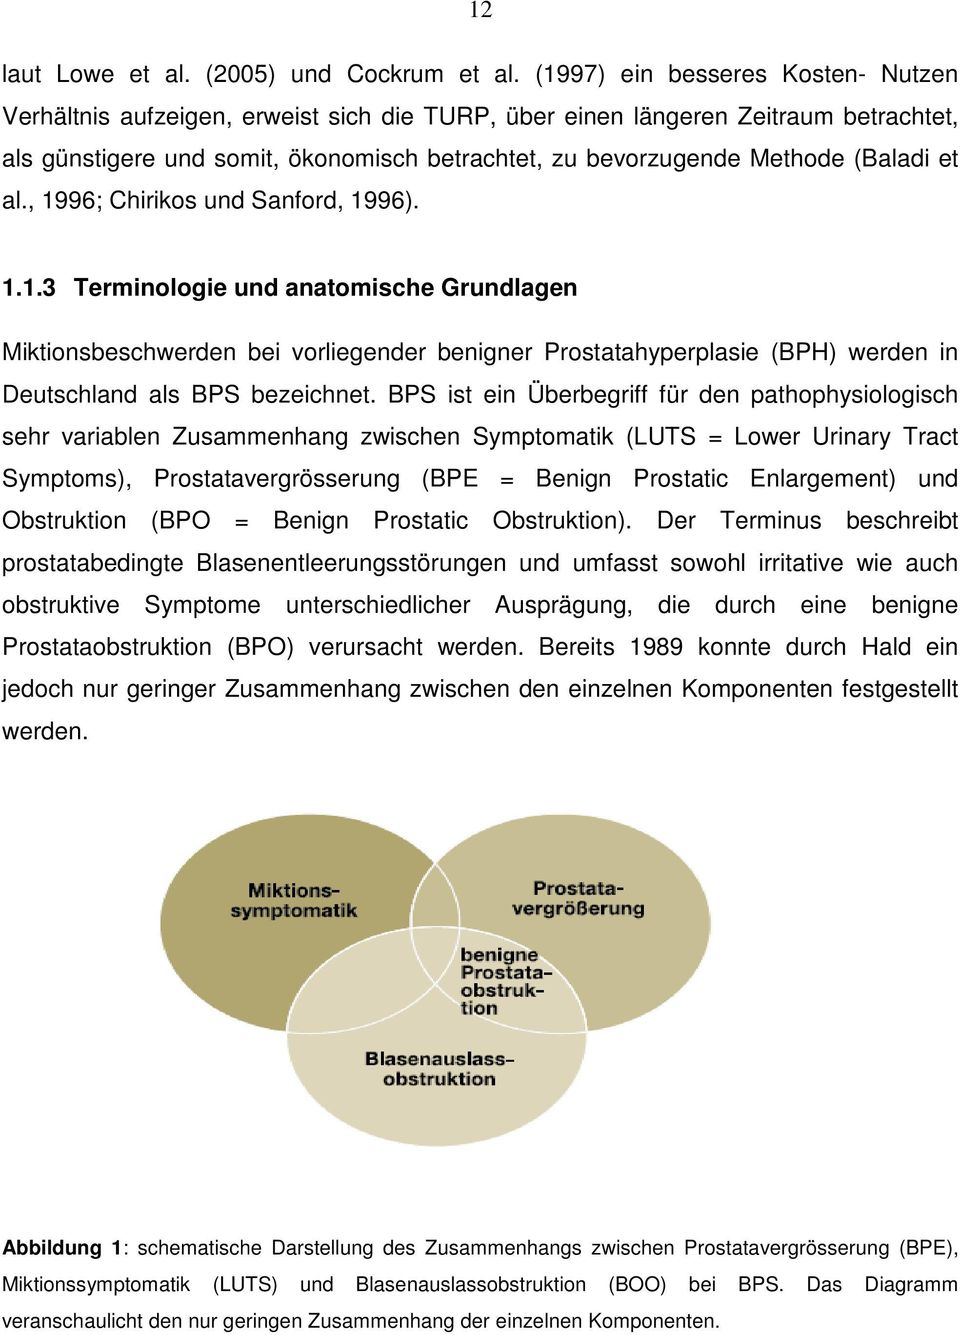 (Baladi et al., 1996; Chirikos und Sanford, 1996). 1.1.3 Terminologie und anatomische Grundlagen Miktionsbeschwerden bei vorliegender benigner Prostatahyperplasie (BPH) werden in Deutschland als BPS bezeichnet.